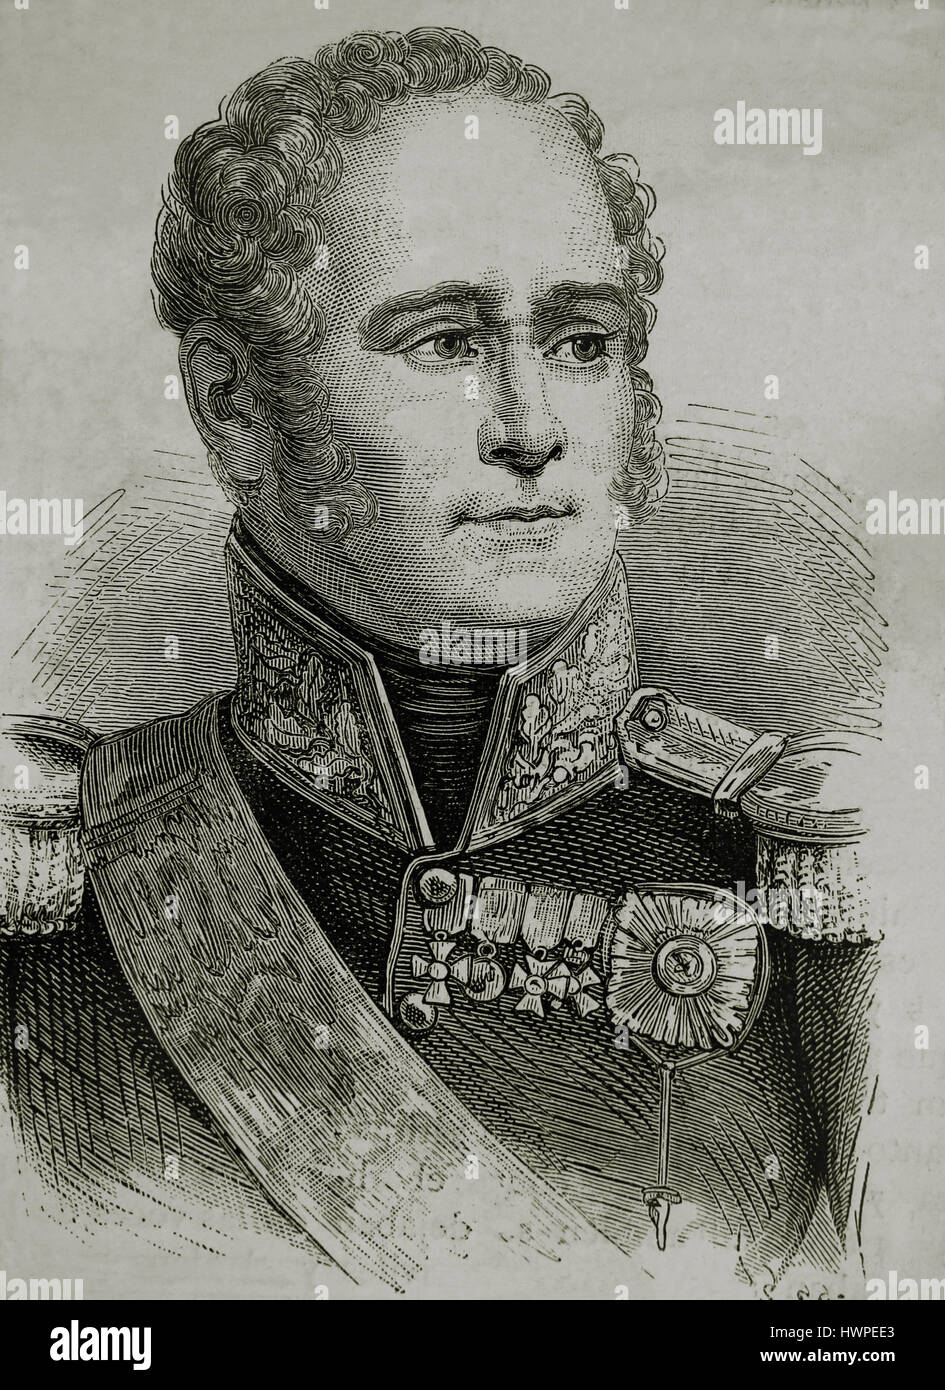 Alessandro I di Rusia (1777-1825). L'imperatore di Russia, re di Polonia, Granduca di Finlandia. Ritratto. Incisione, 1883. Foto Stock